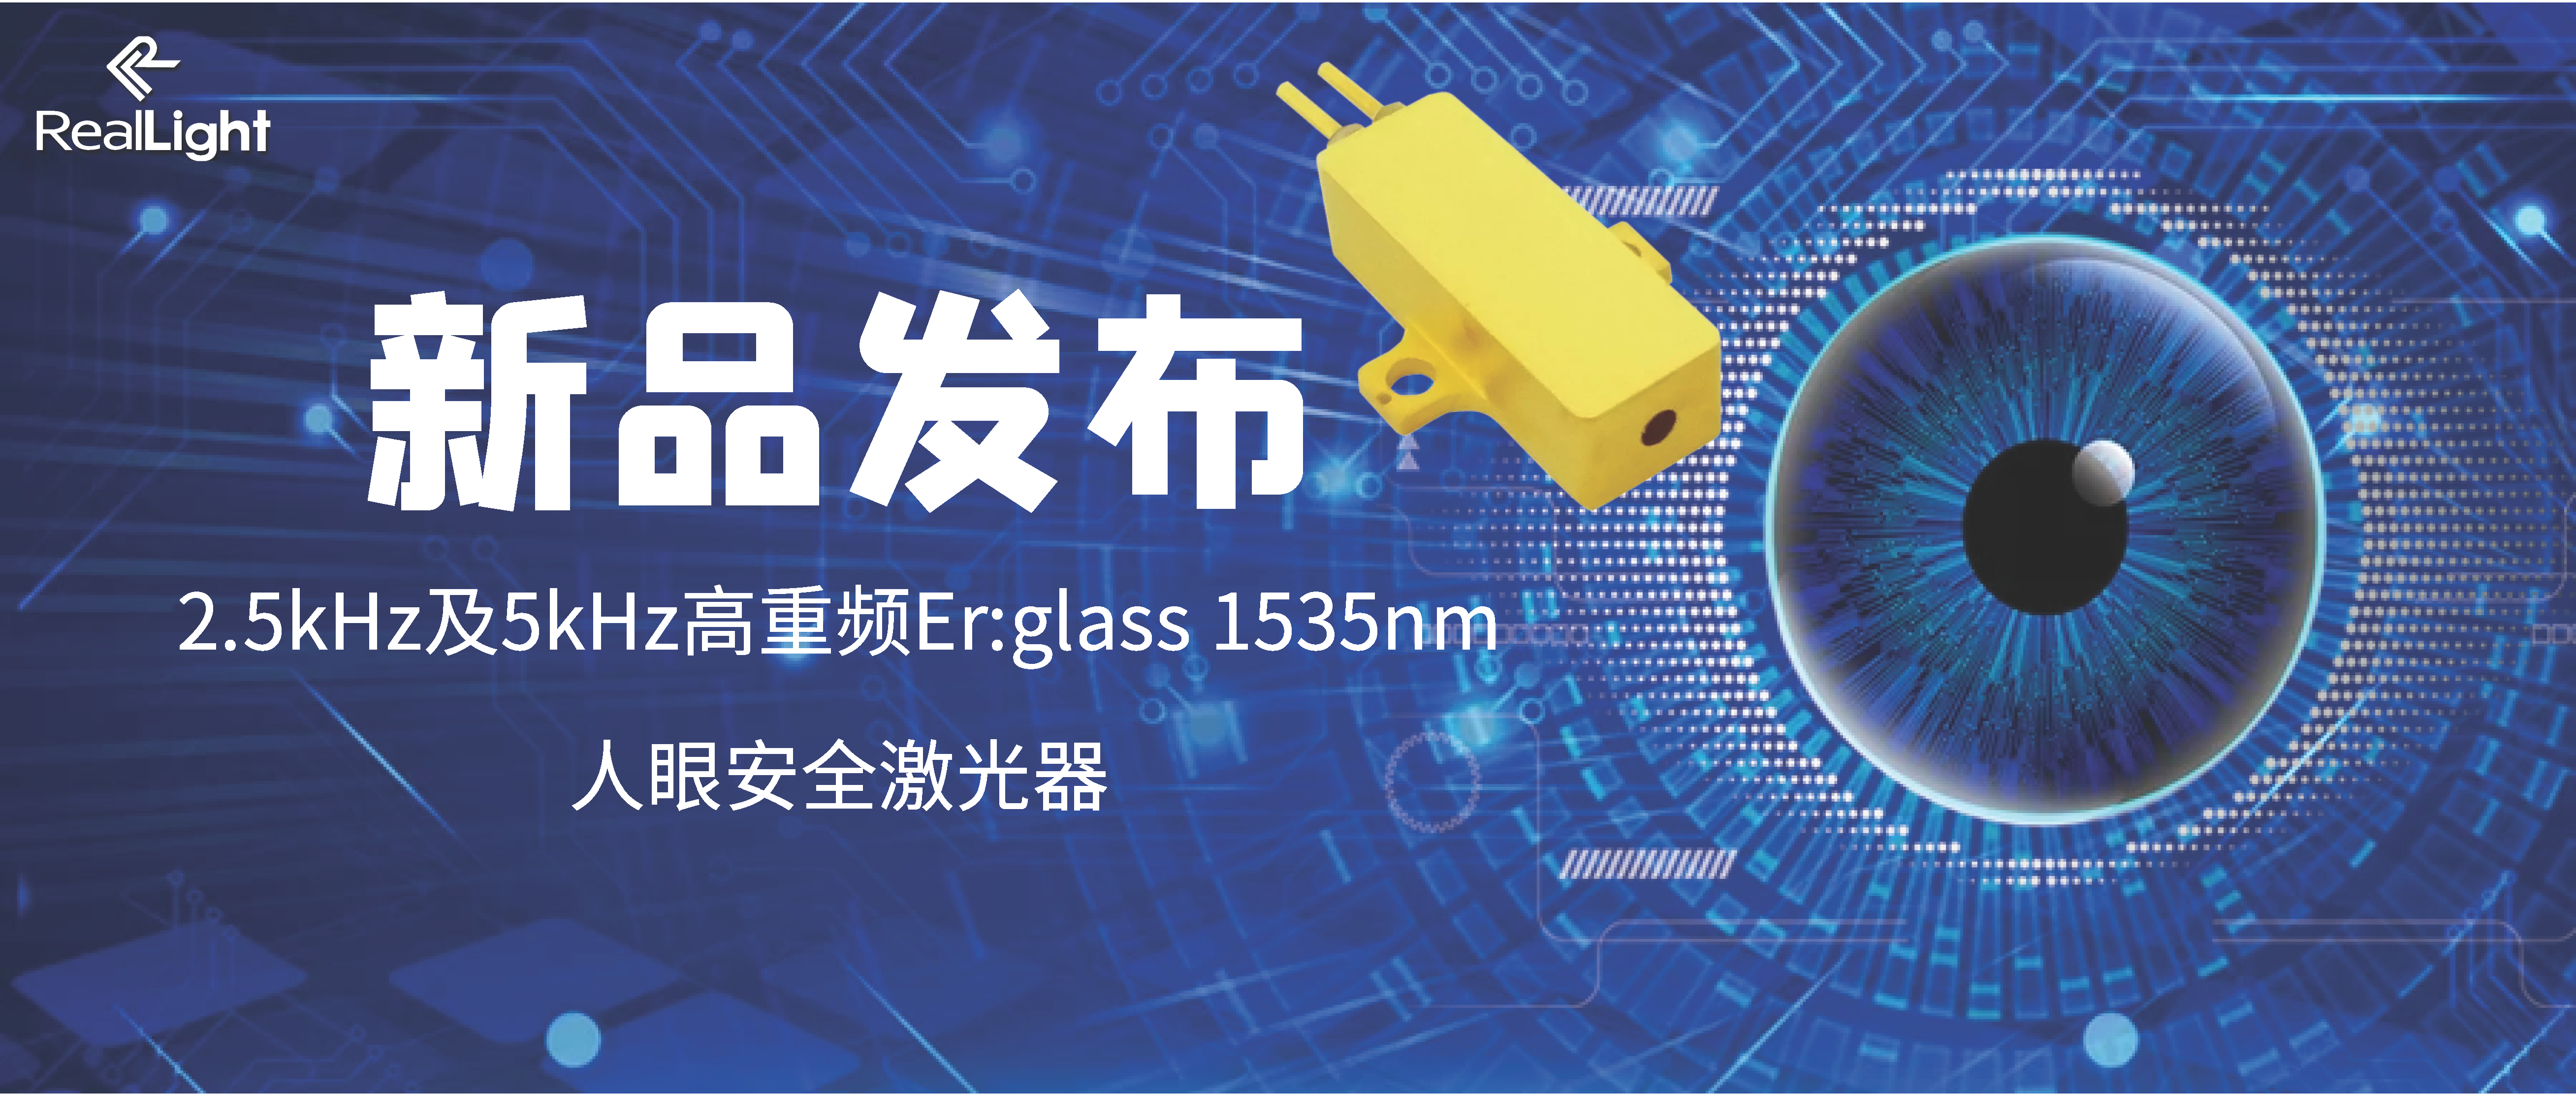 新品发布：2.5kHz及5kHz高重频Er:glass 1535nm人眼安全激光器